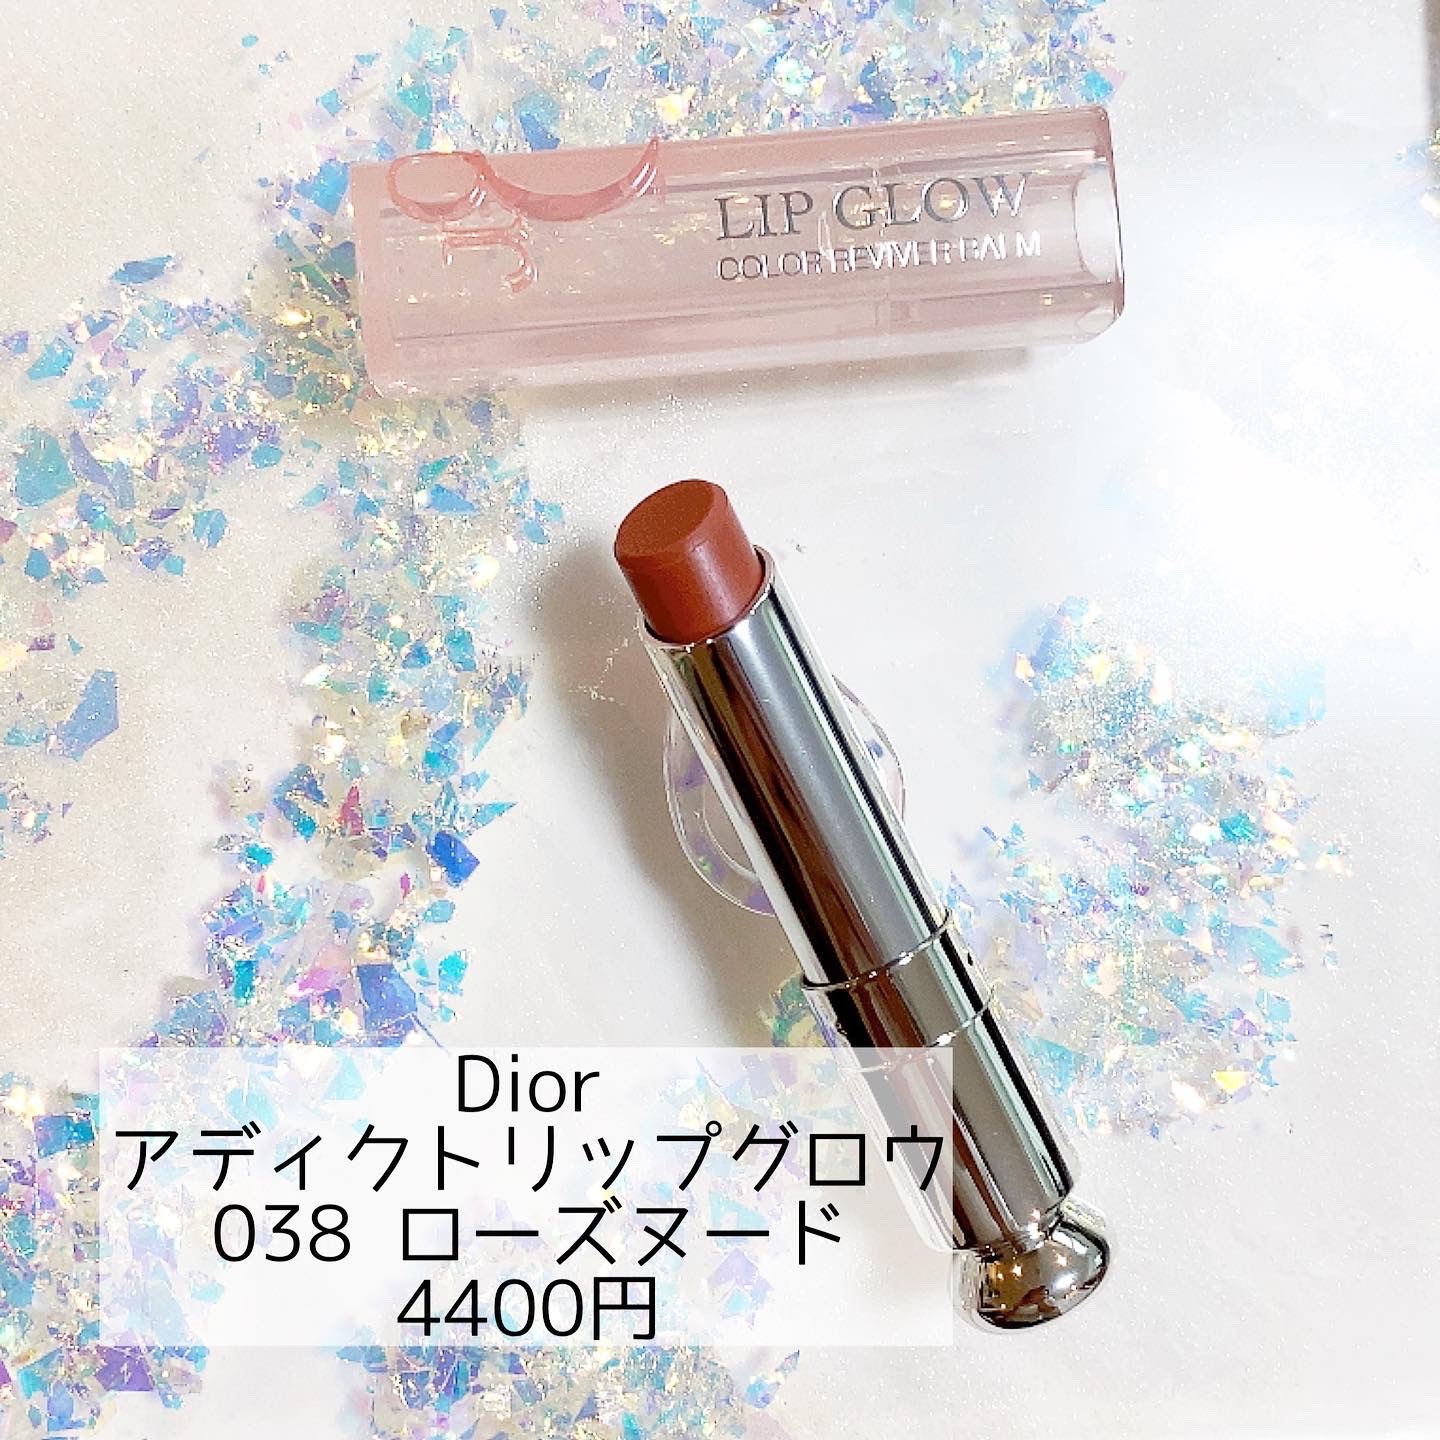 ◇セール特価品◇ Dior アディクトリップグロウ リップグロス